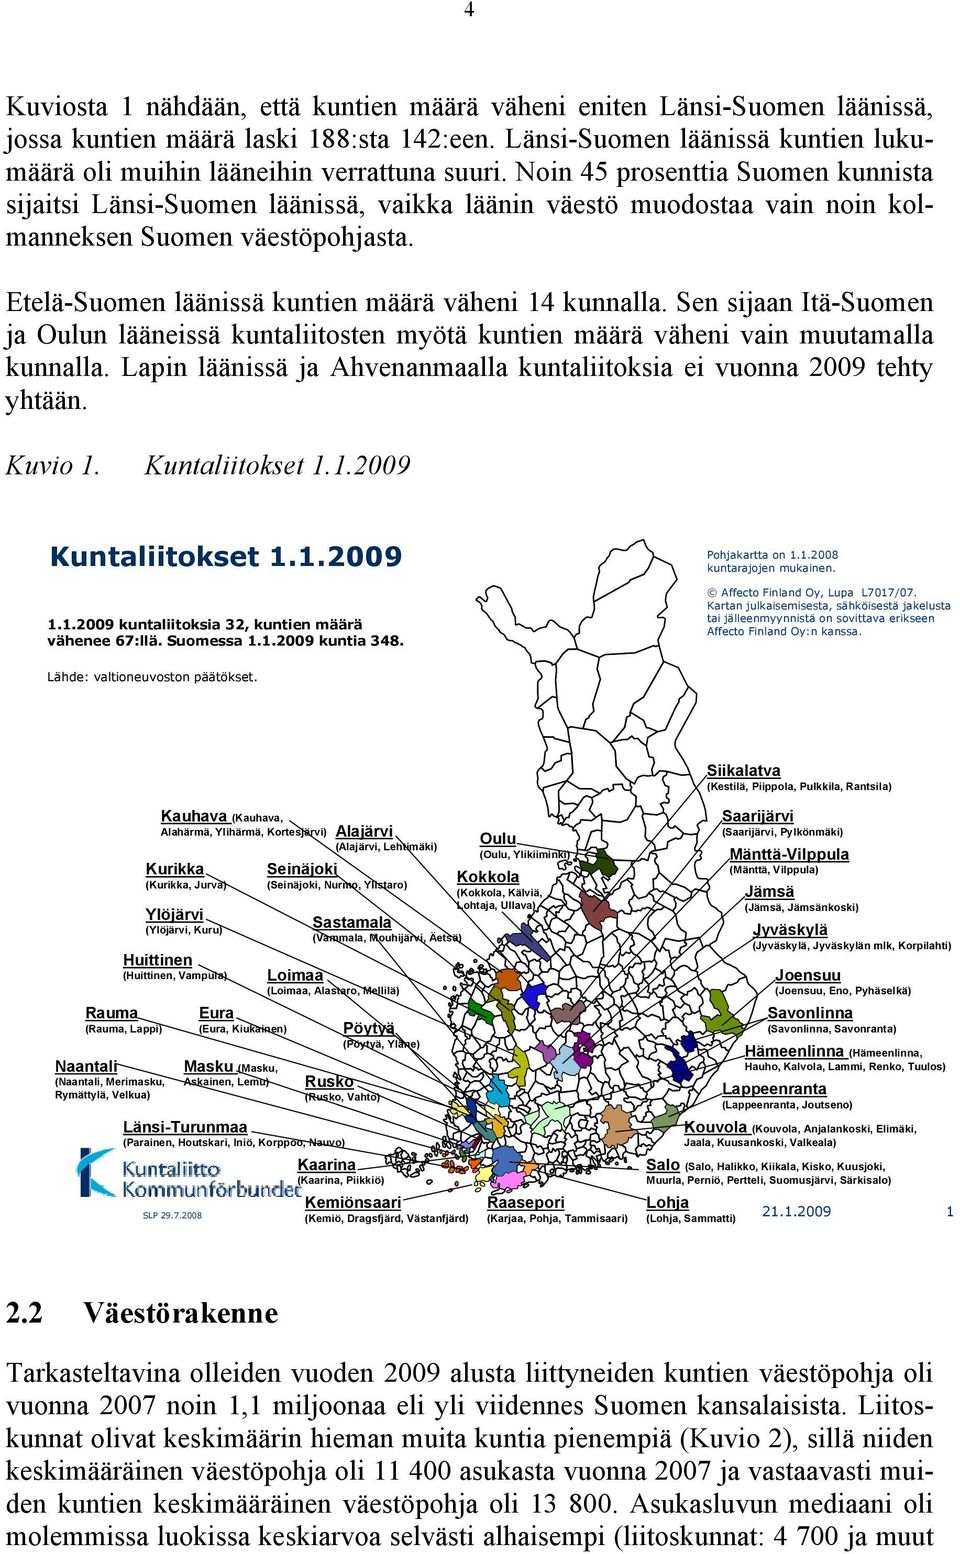 Sen sijaan Itä-Suomen ja Oulun lääneissä kuntaliitosten myötä kuntien määrä väheni vain muutamalla kunnalla. Lapin läänissä ja Ahvenanmaalla kuntaliitoksia ei vuonna 29 tehty yhtään. Kuvio 1.